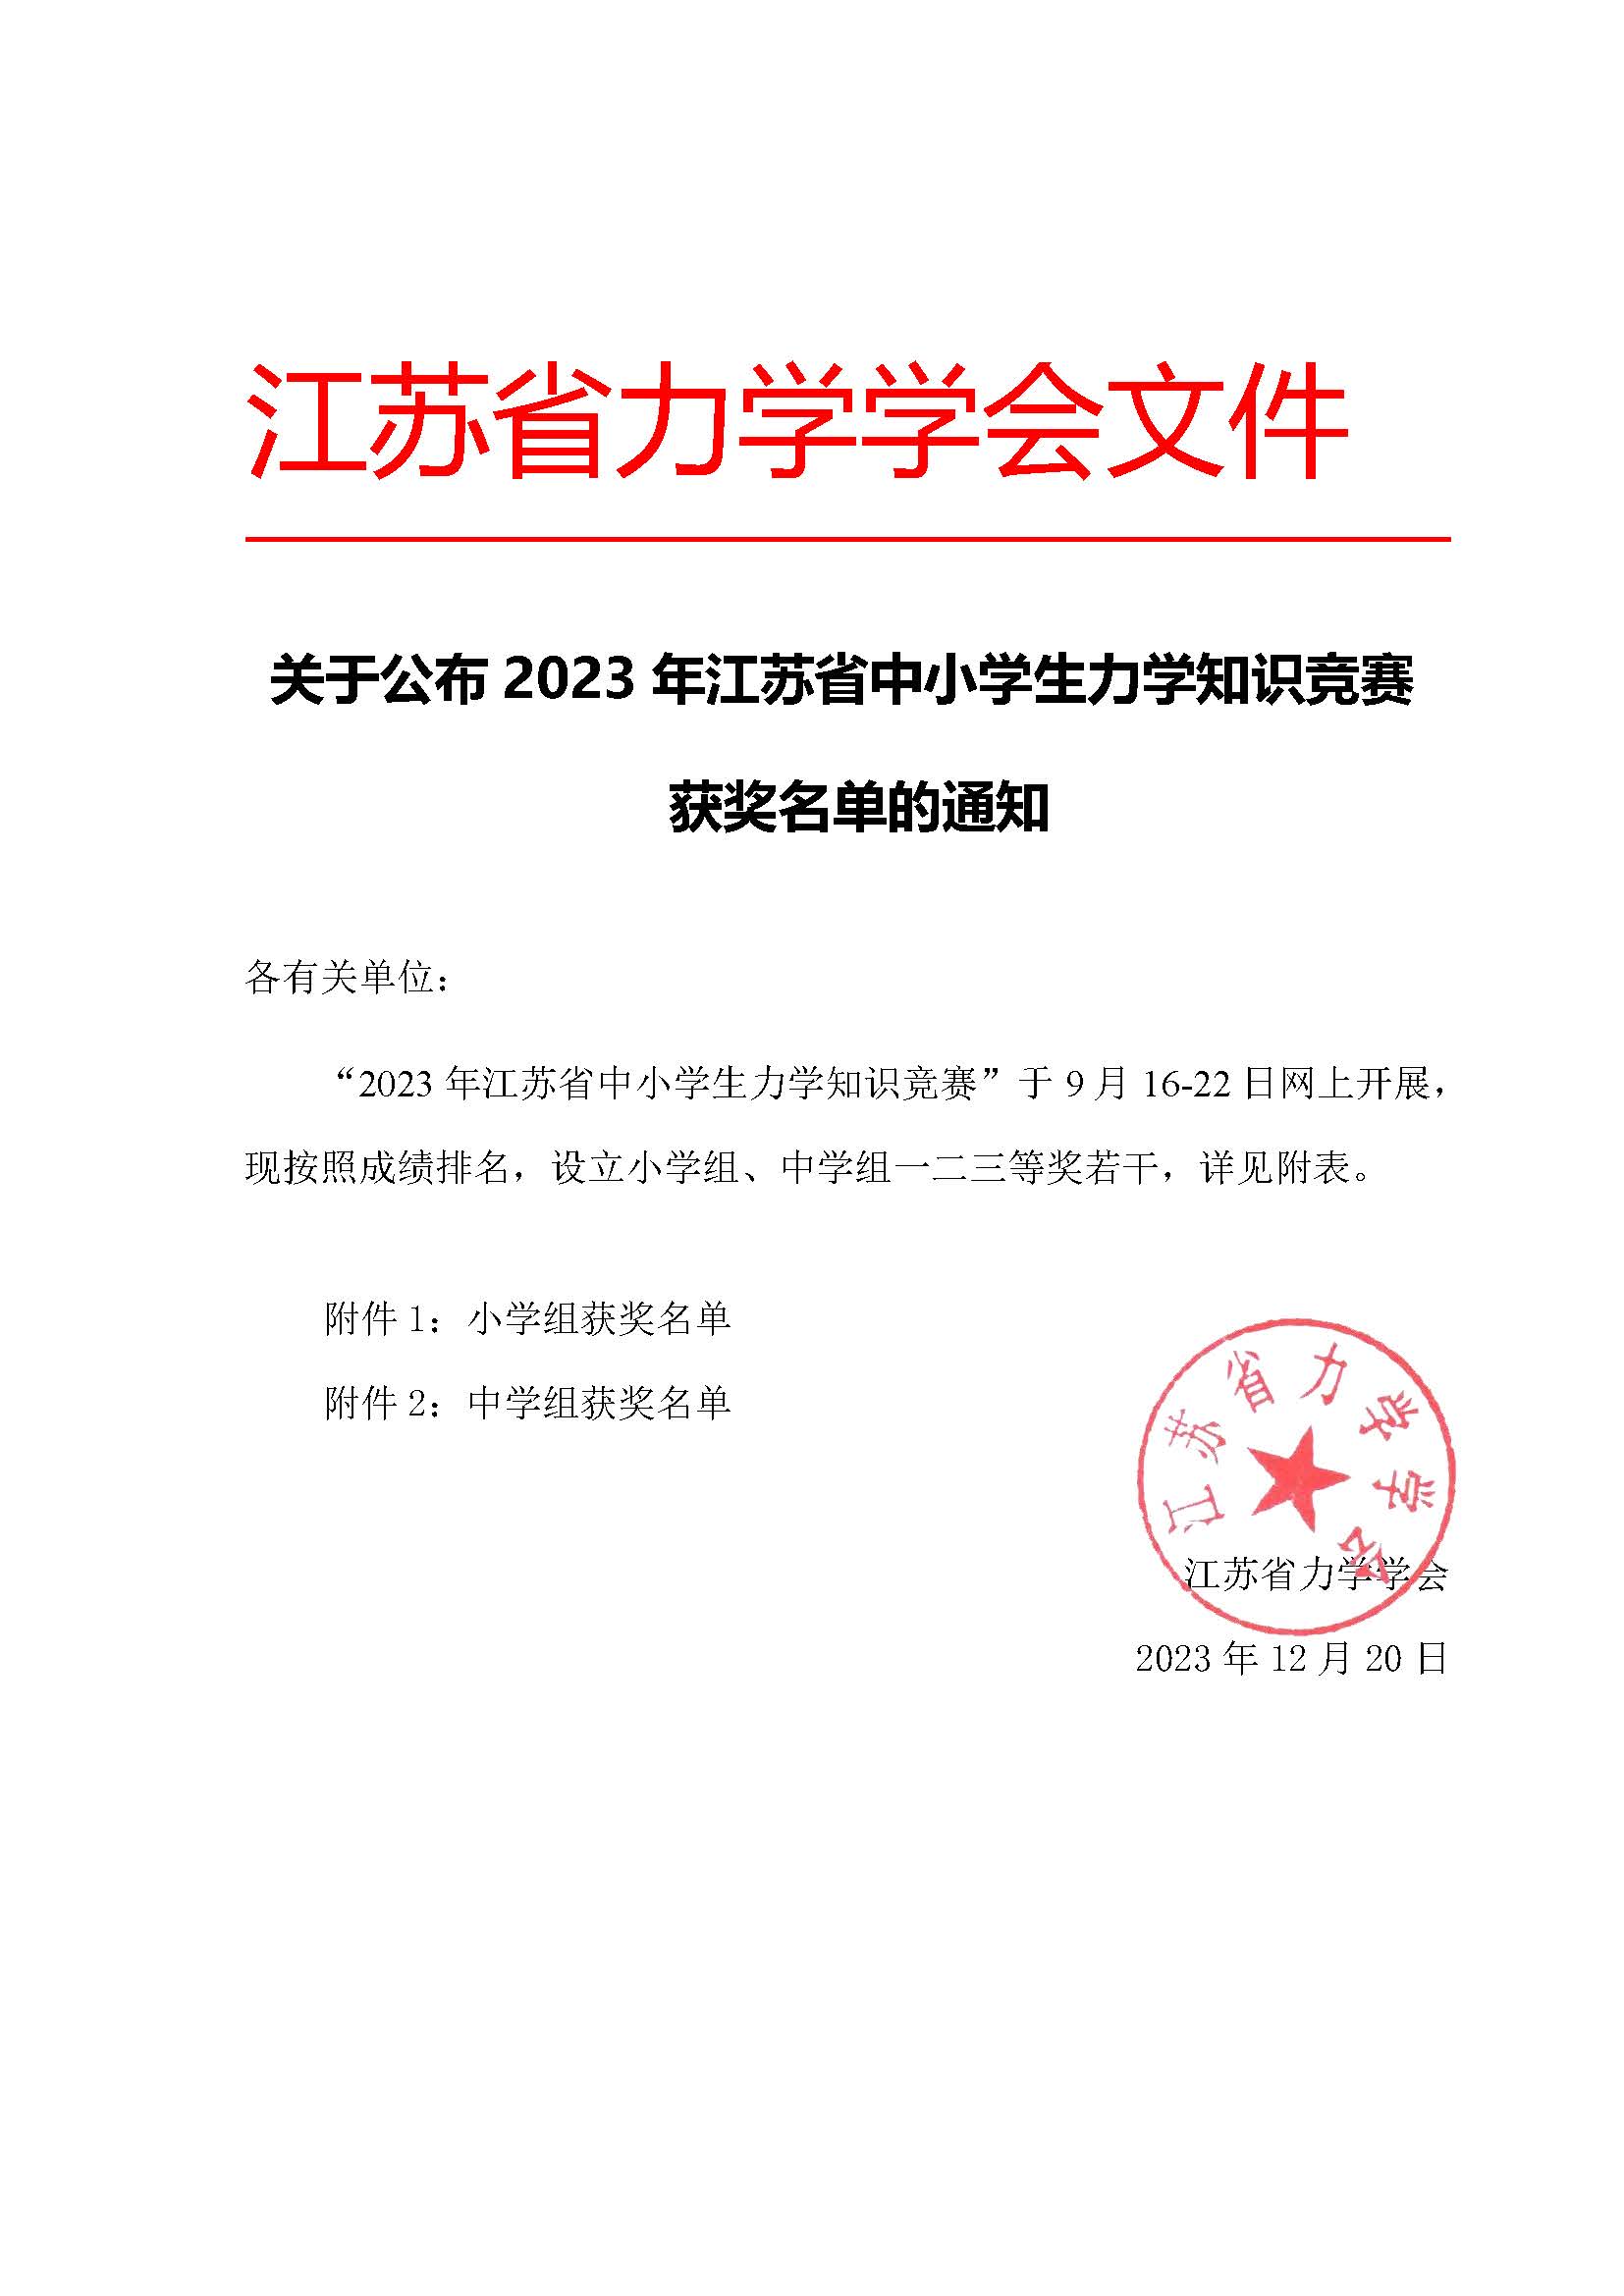 关于公布2023年江苏省中小学生力学知识竞赛获奖的通知.jpg